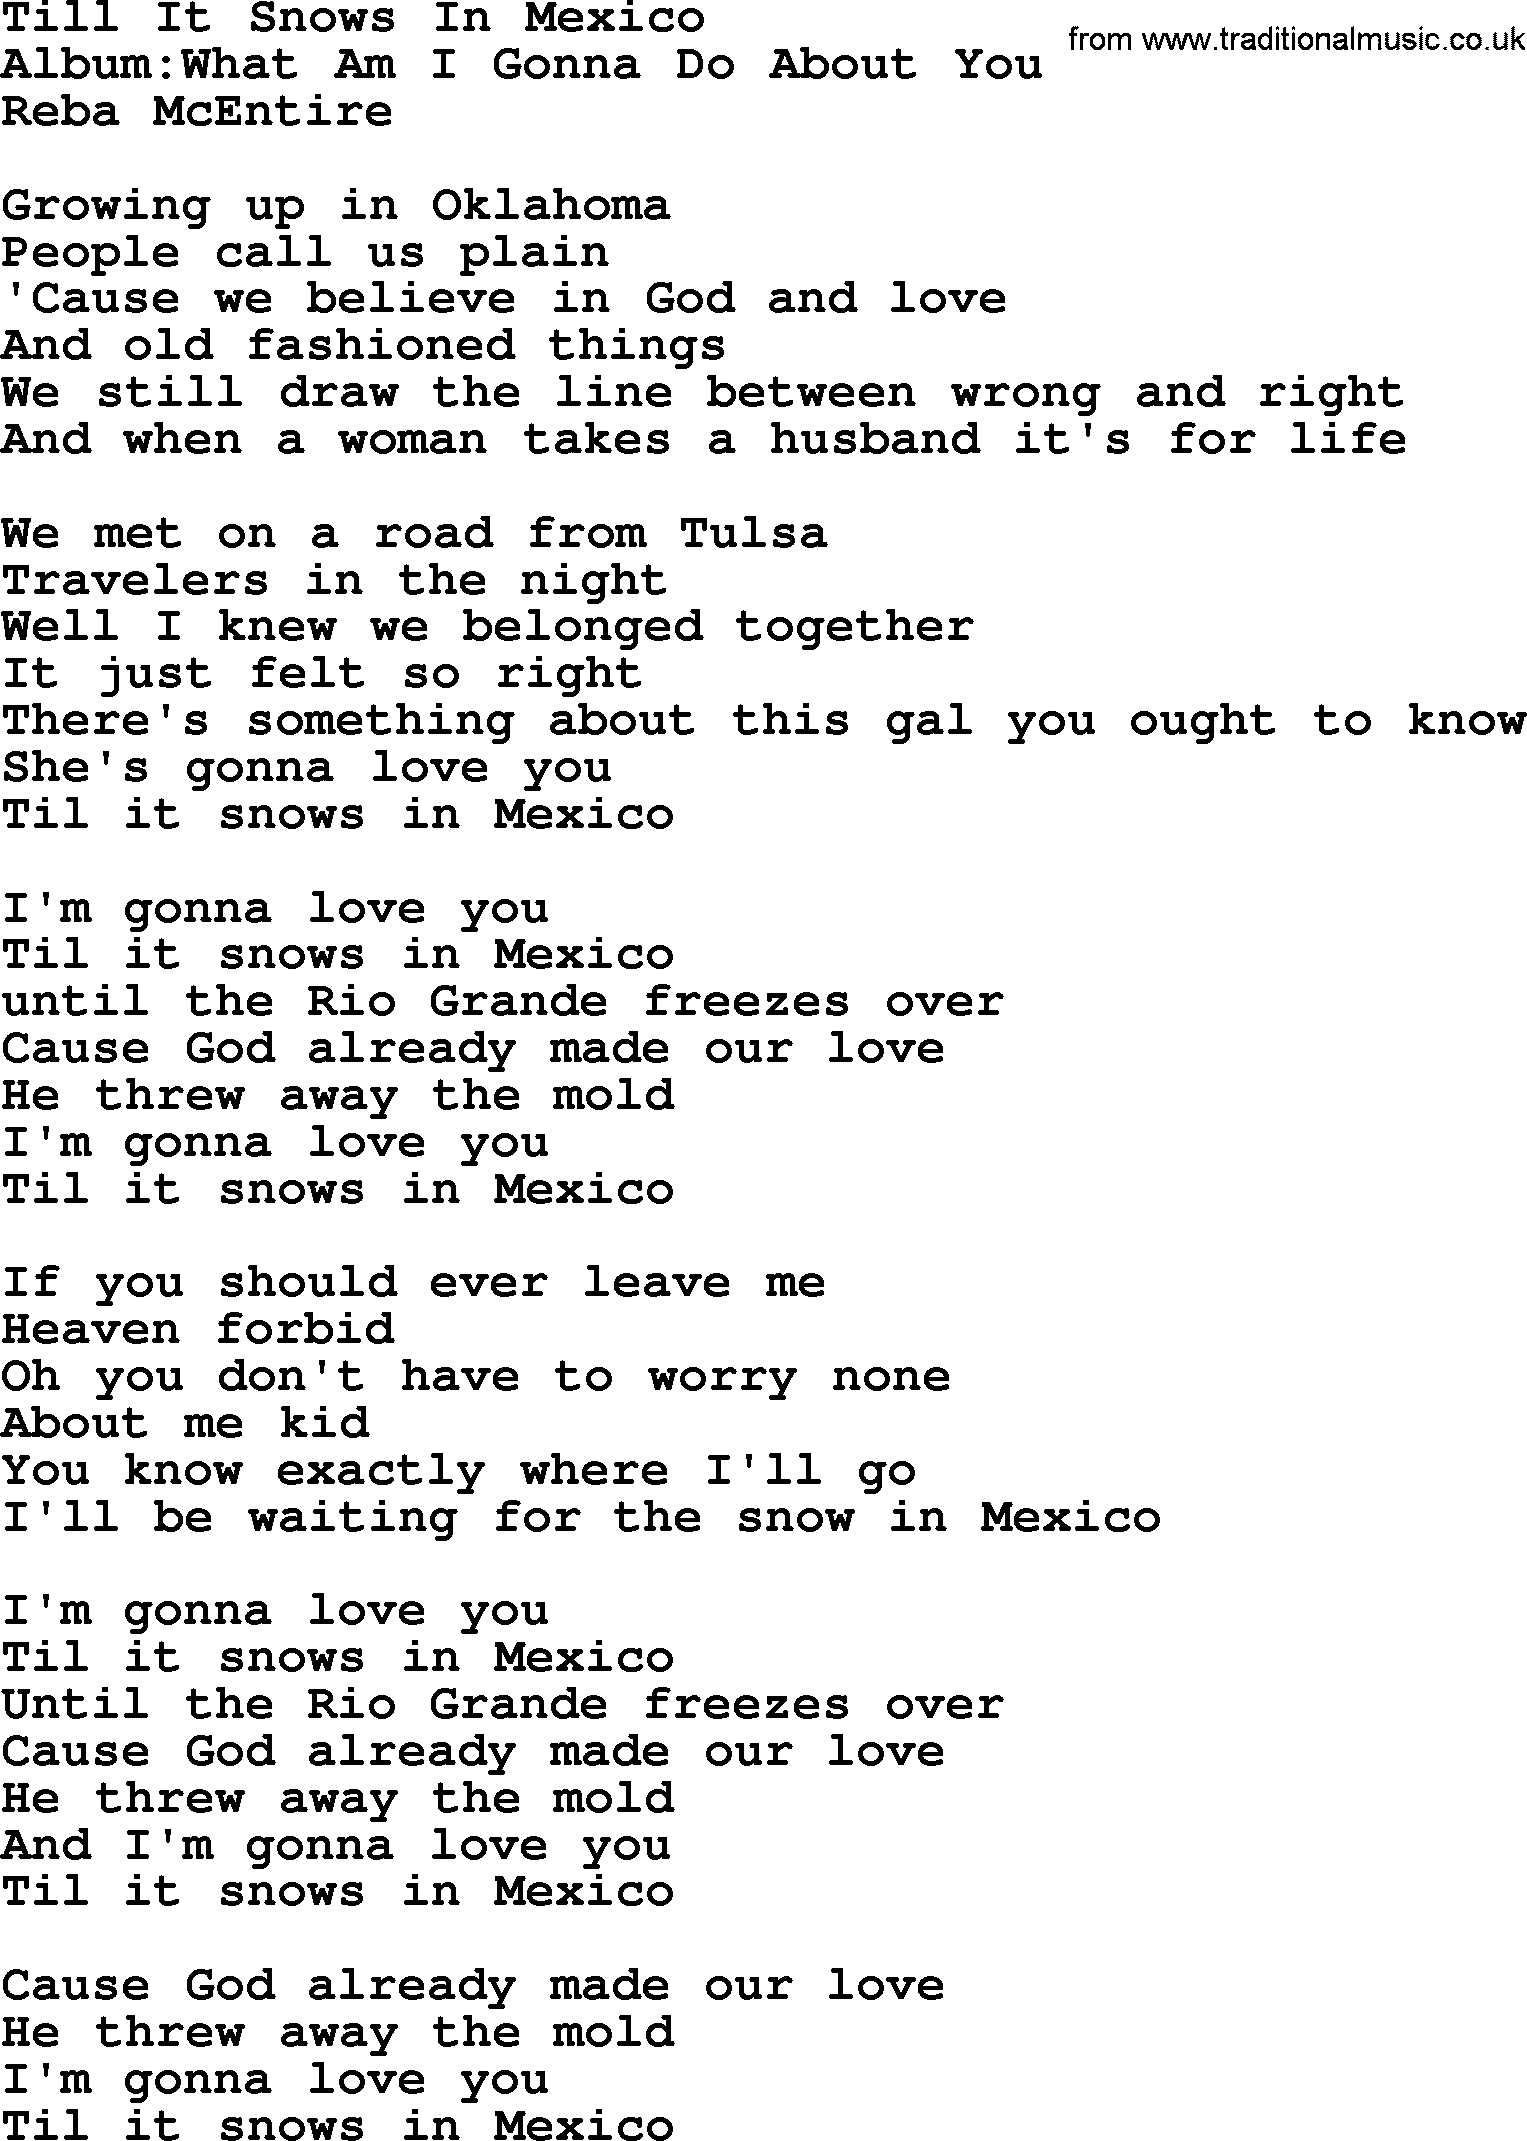 Reba McEntire song: Till It Snows In Mexico lyrics